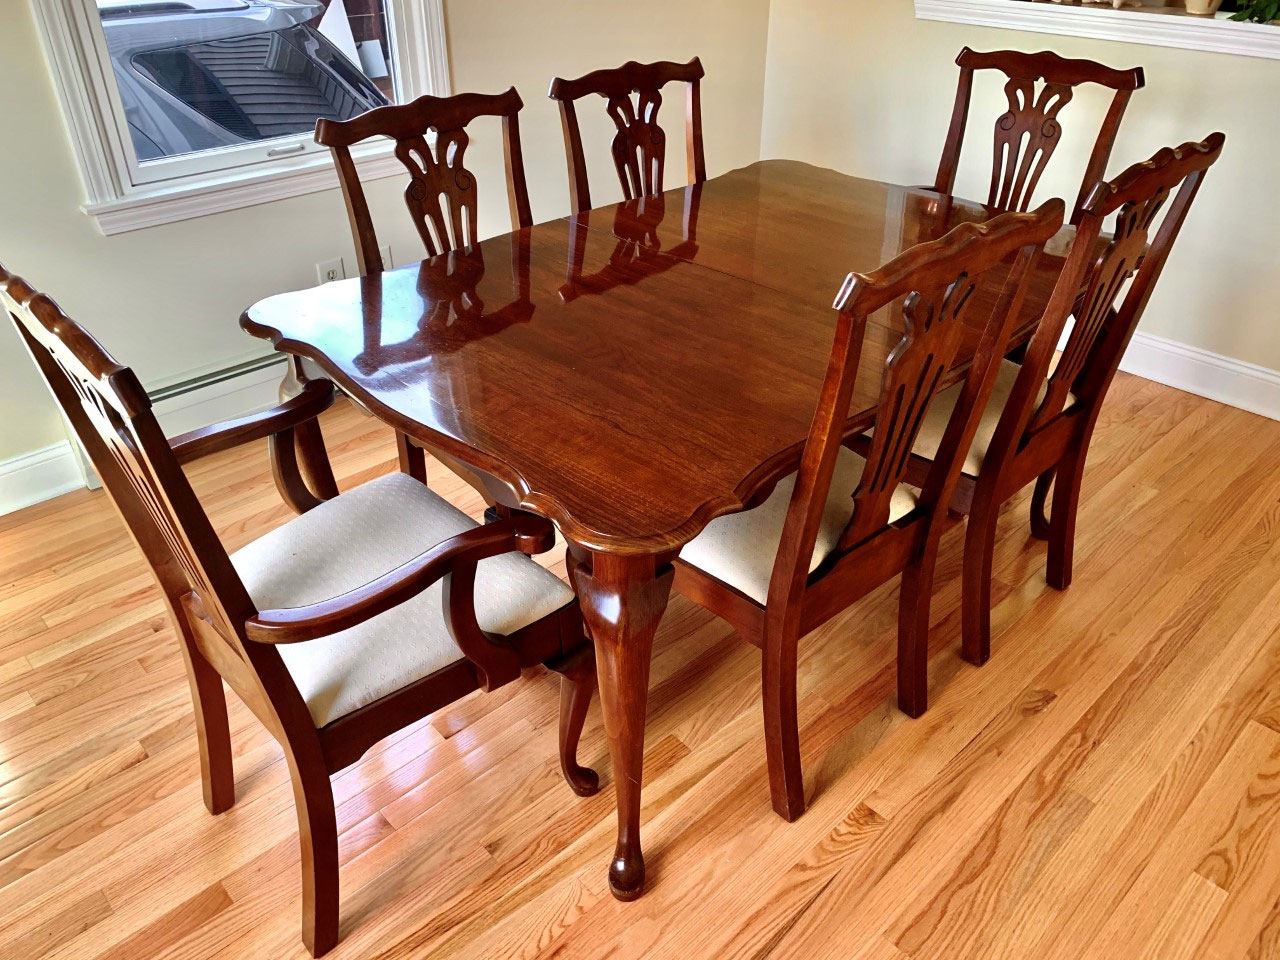 pennsylvania house furniture kitchen table set